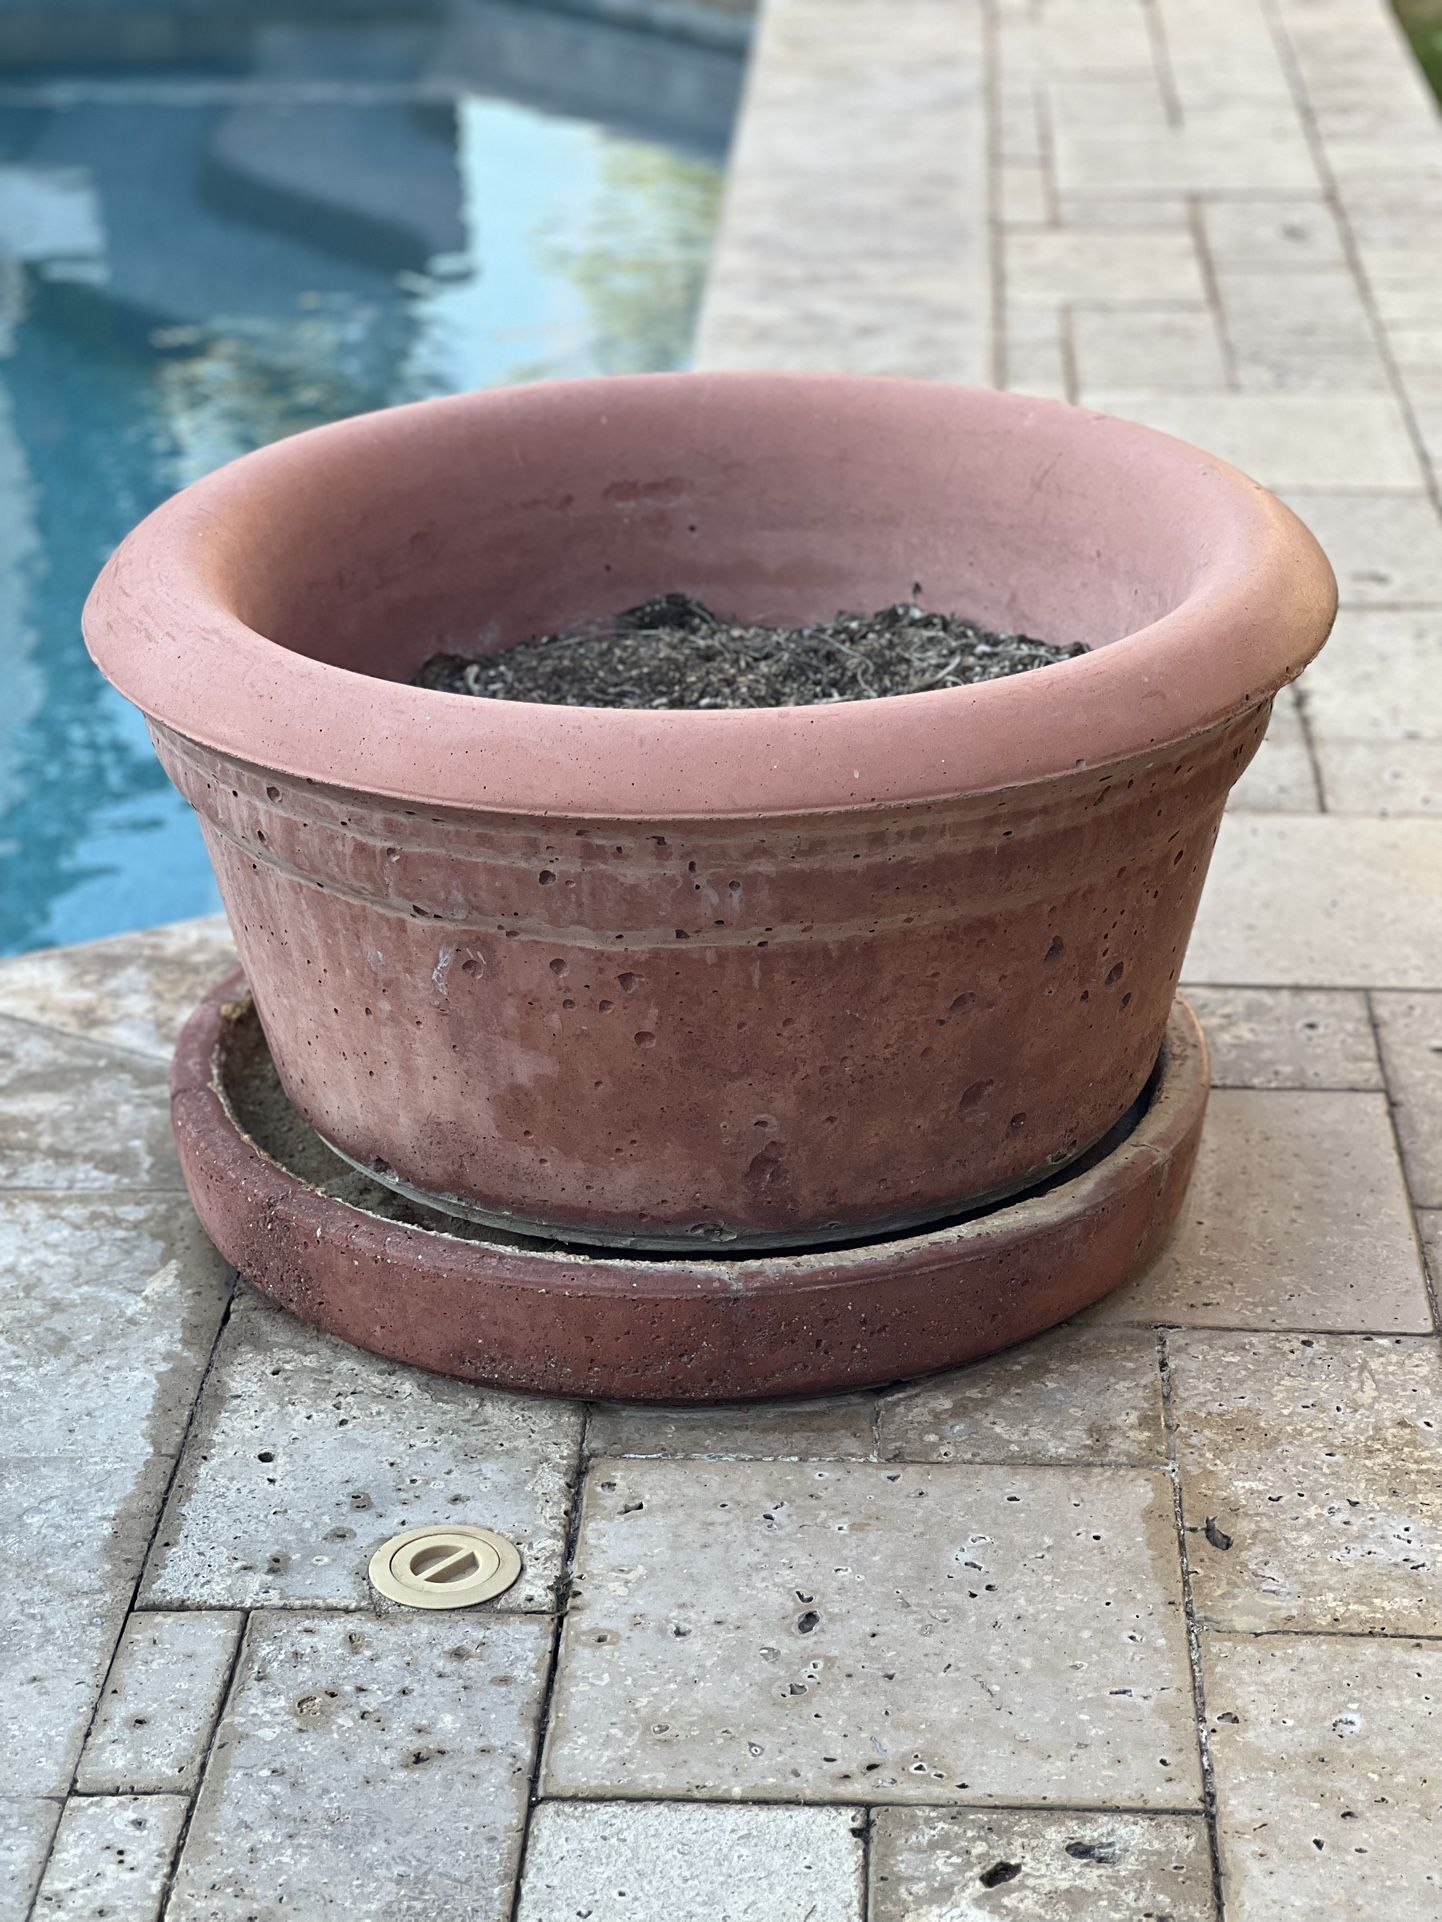 Medium Plant Pot